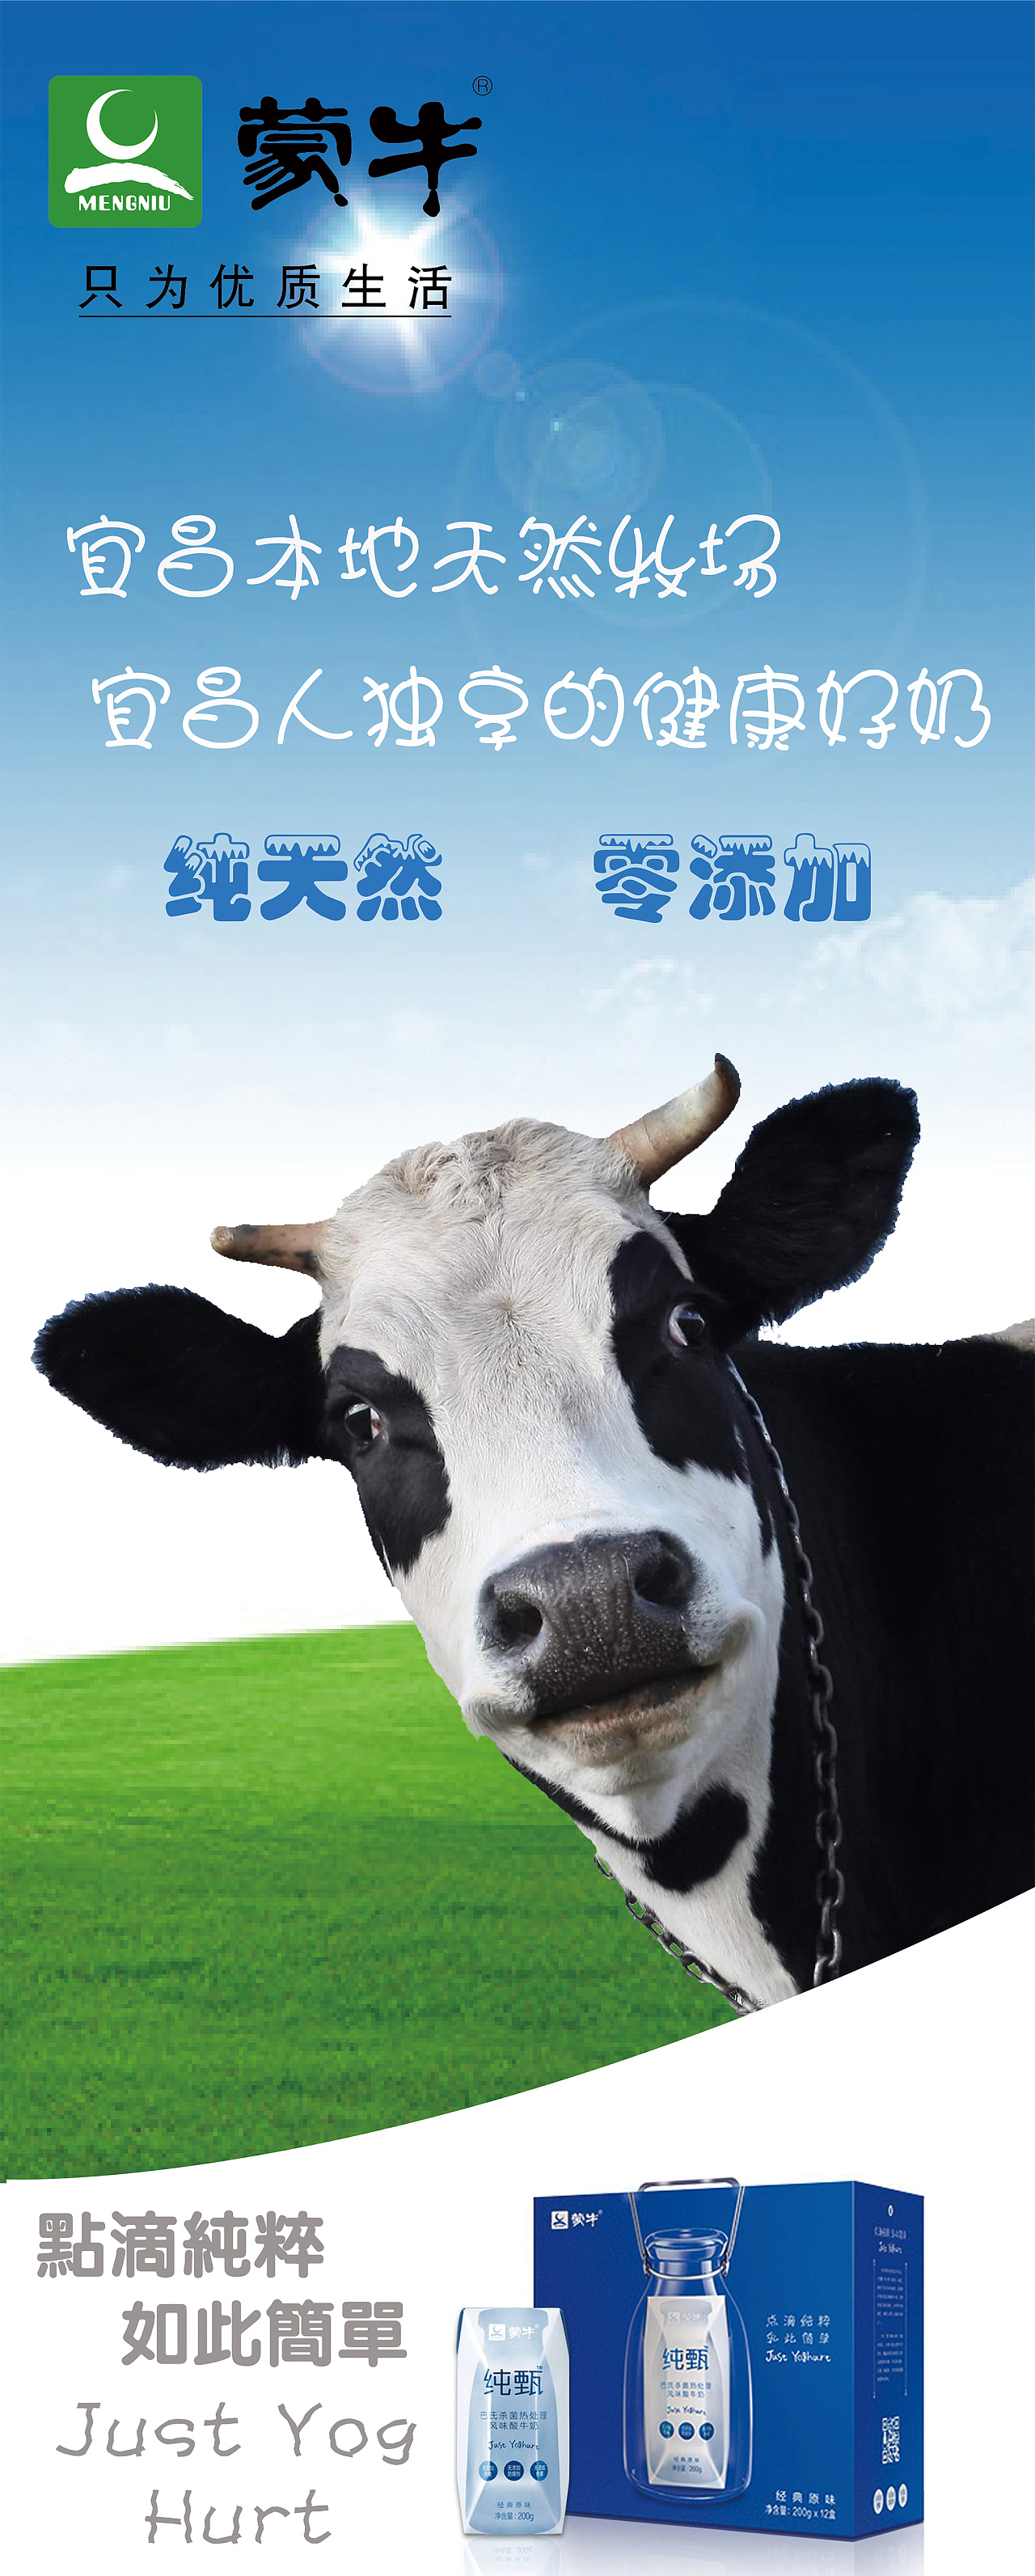 蒙牛平面广告图片